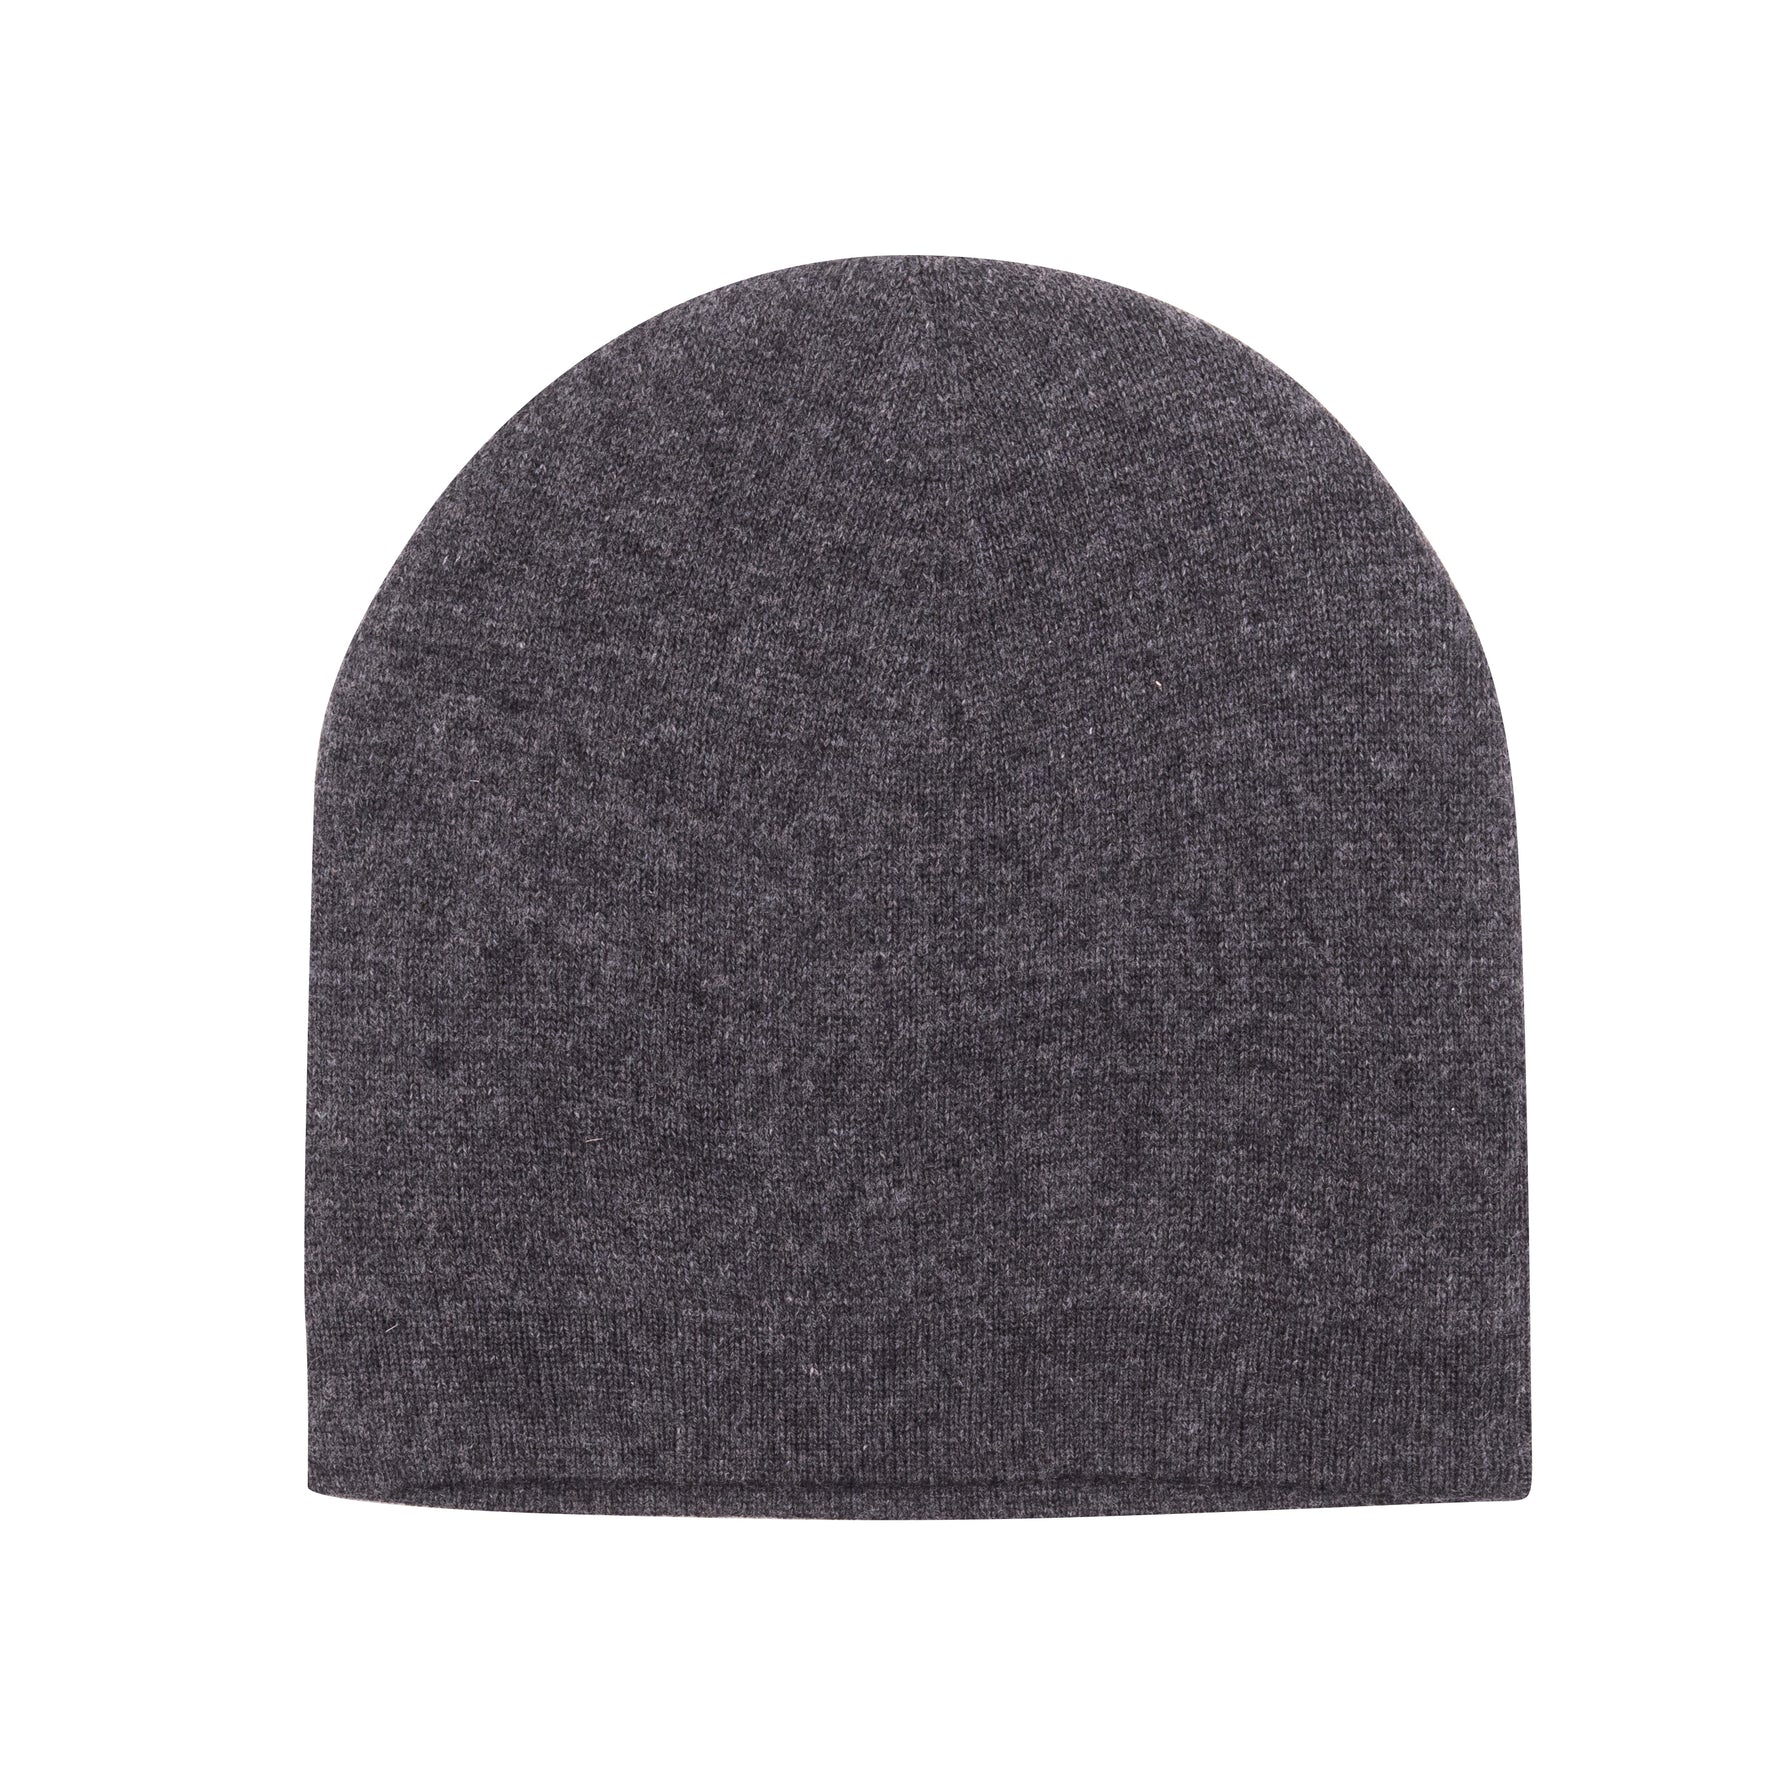 Bonnet bonnet cachemire lisse noir gris